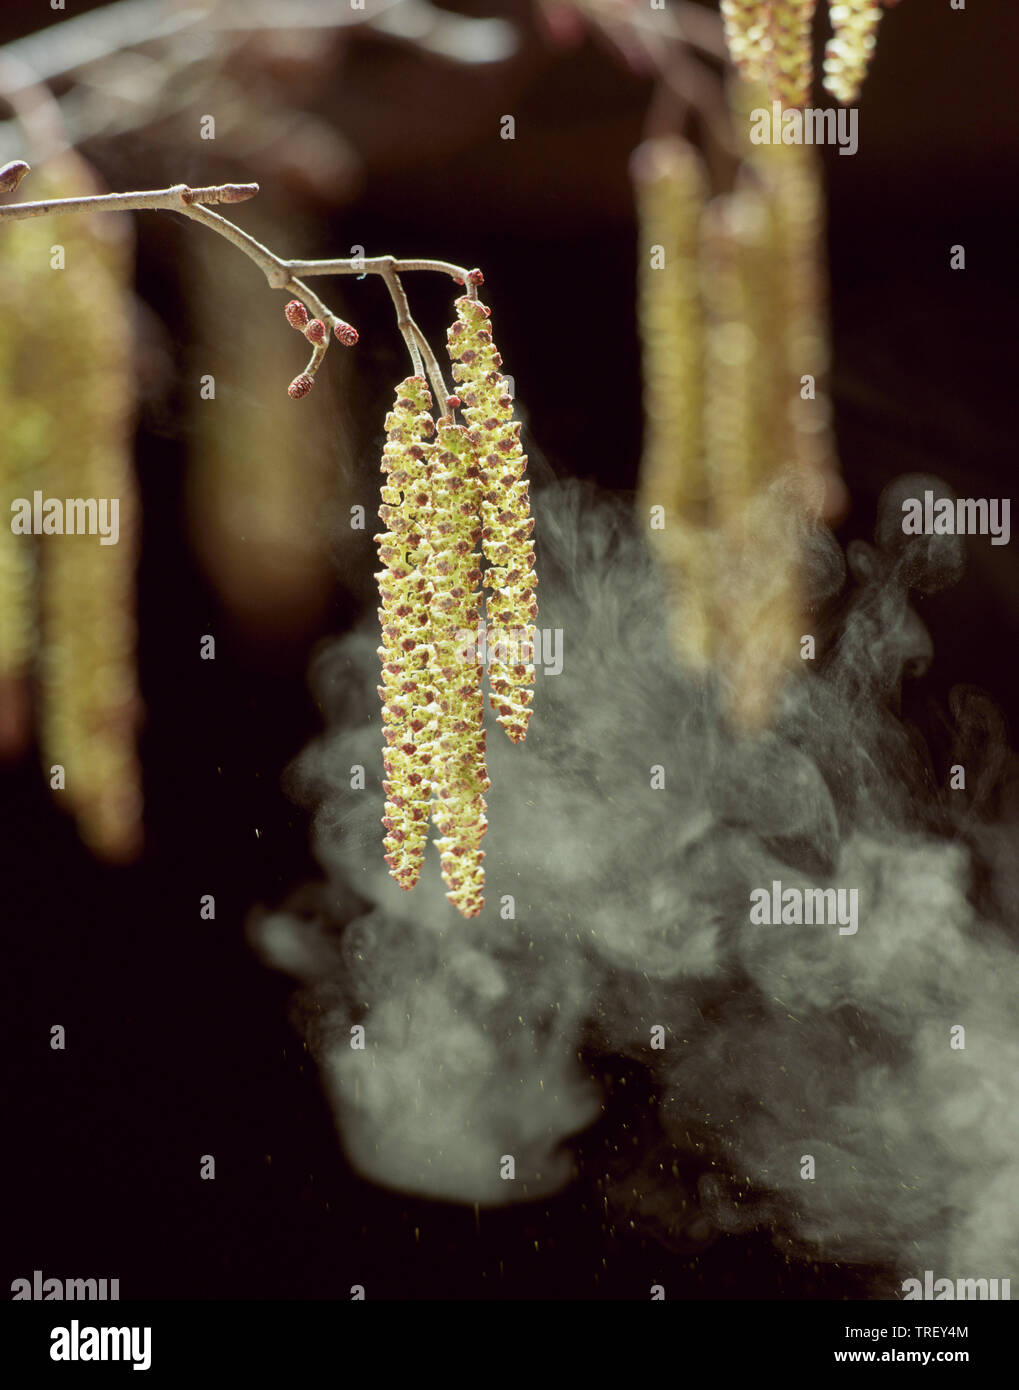 Gemeinsame Erle, Europäische Erle (Alnus glutinosa), Zweig, mit männlichen Blütenstände, dispergieren Pollen durch Wind. Stockfoto